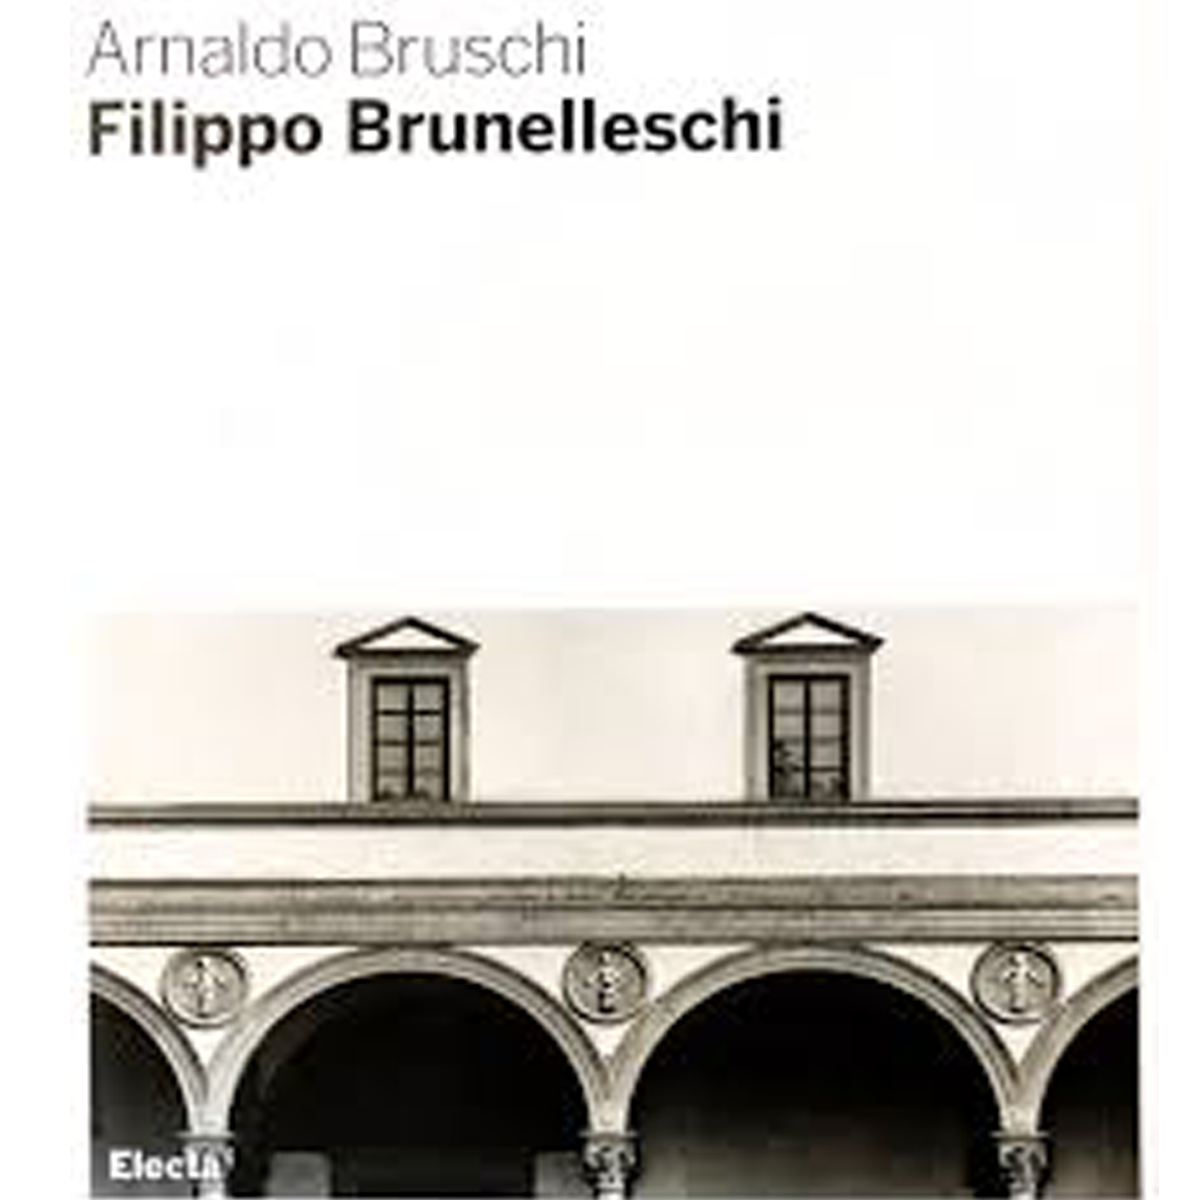 Filippo Brunelleschi